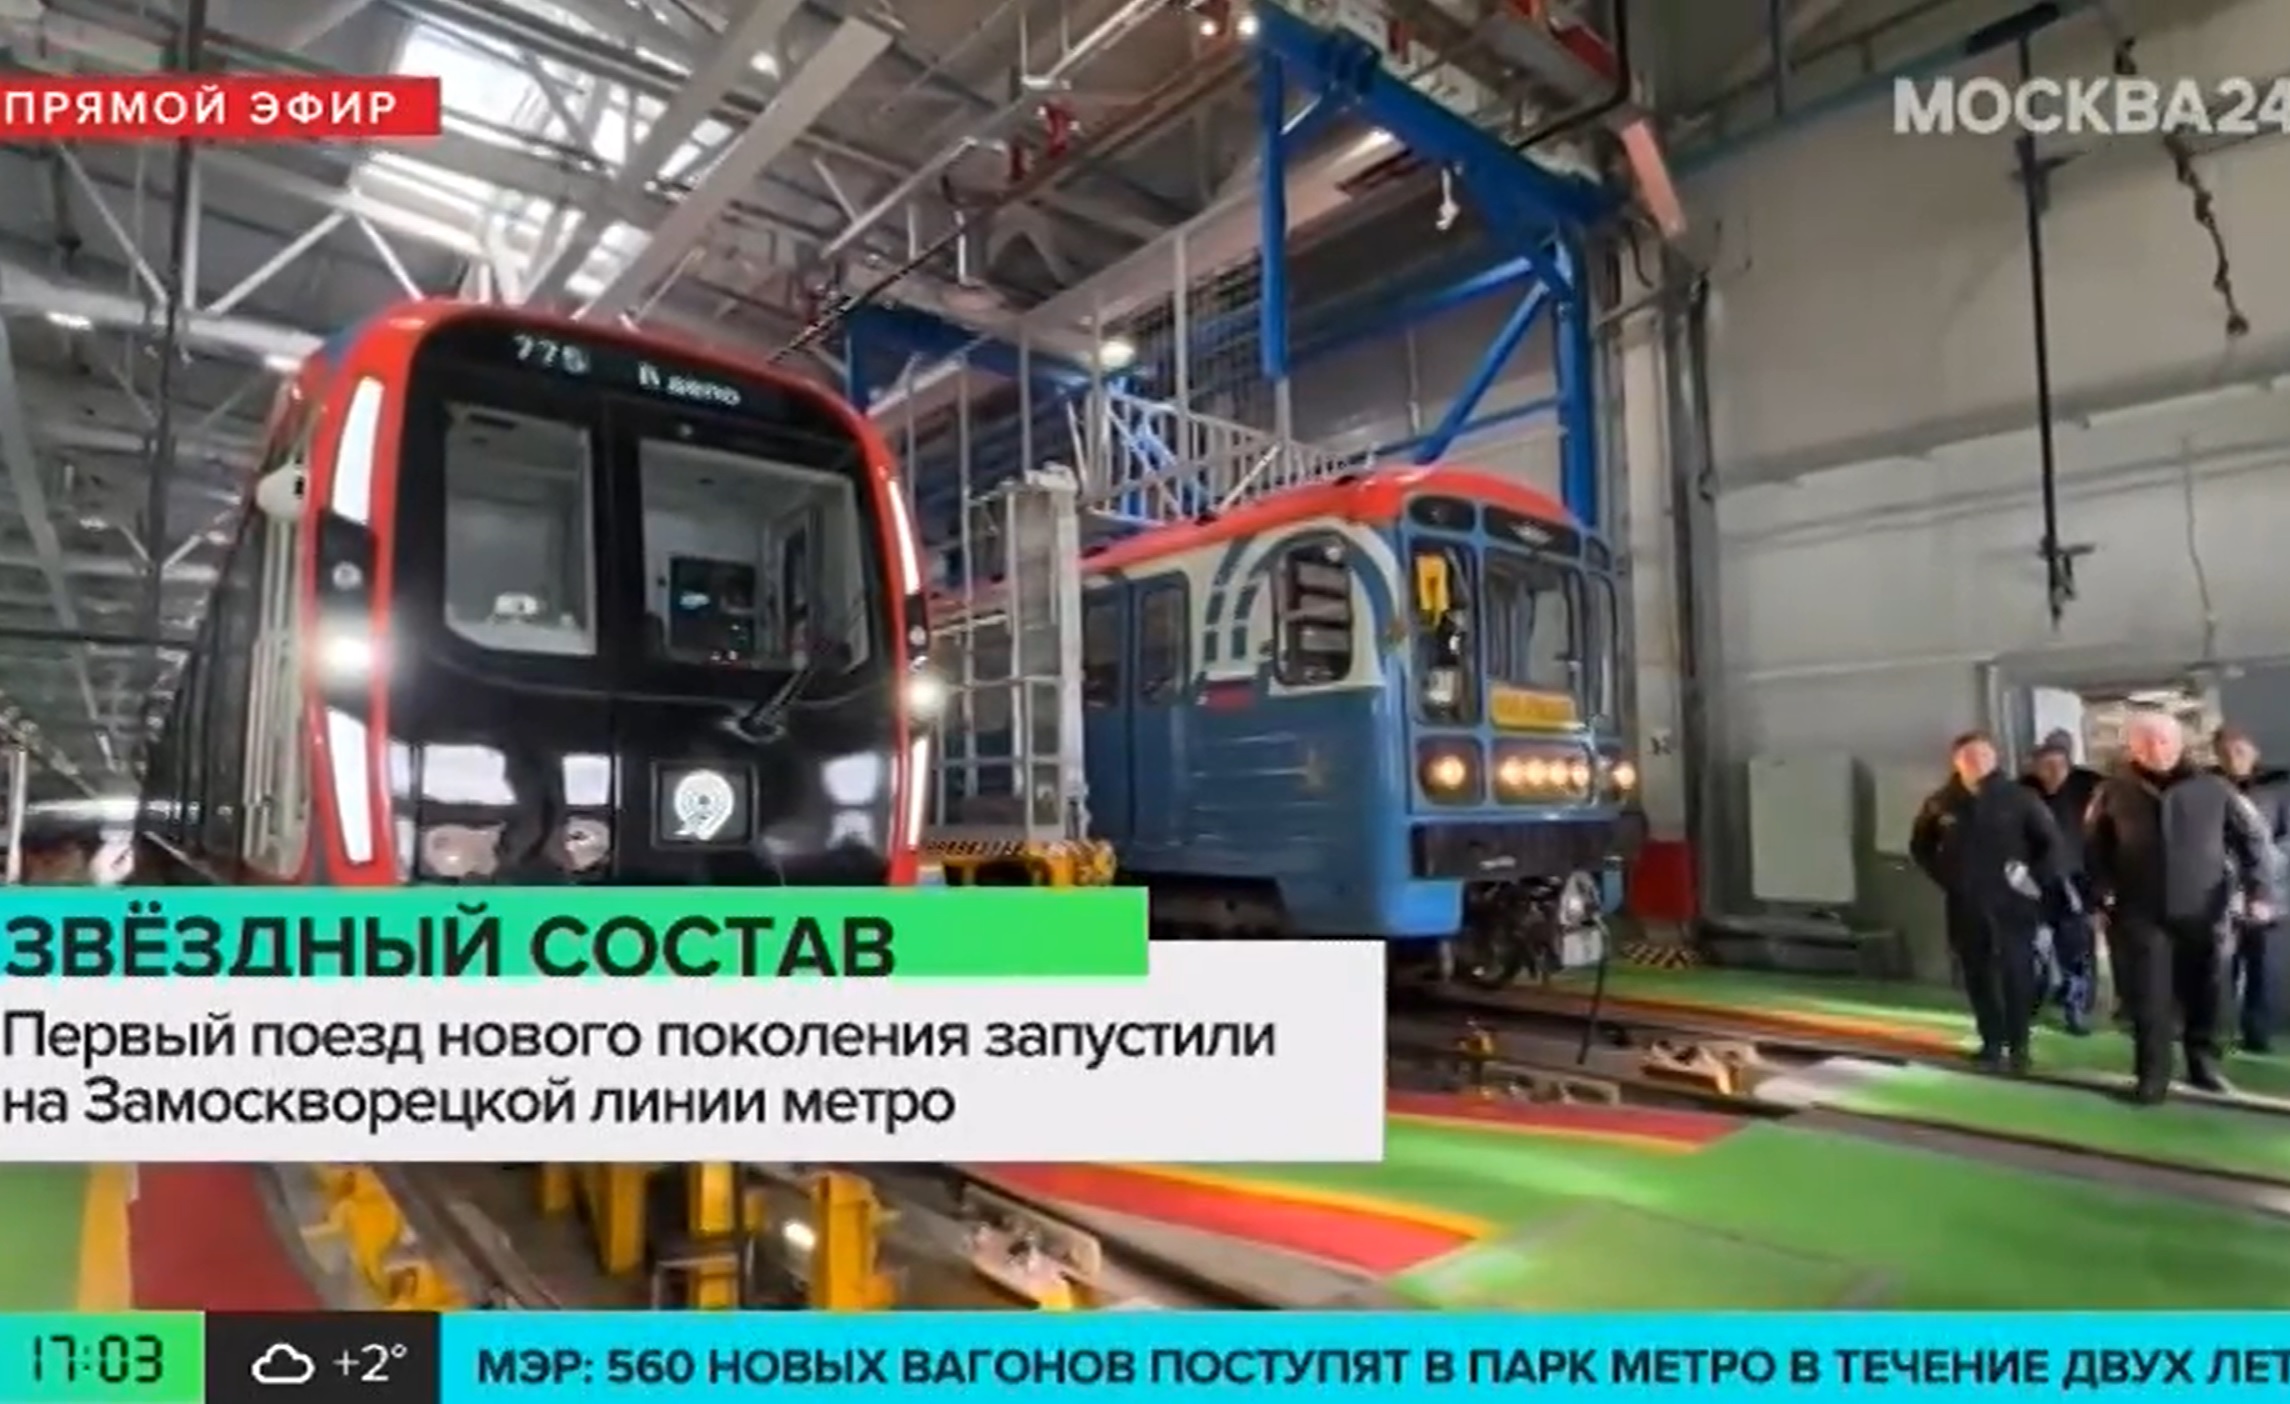 Собянин объявил о выходе на линии метро поезда нового поколения "Москва-2024"